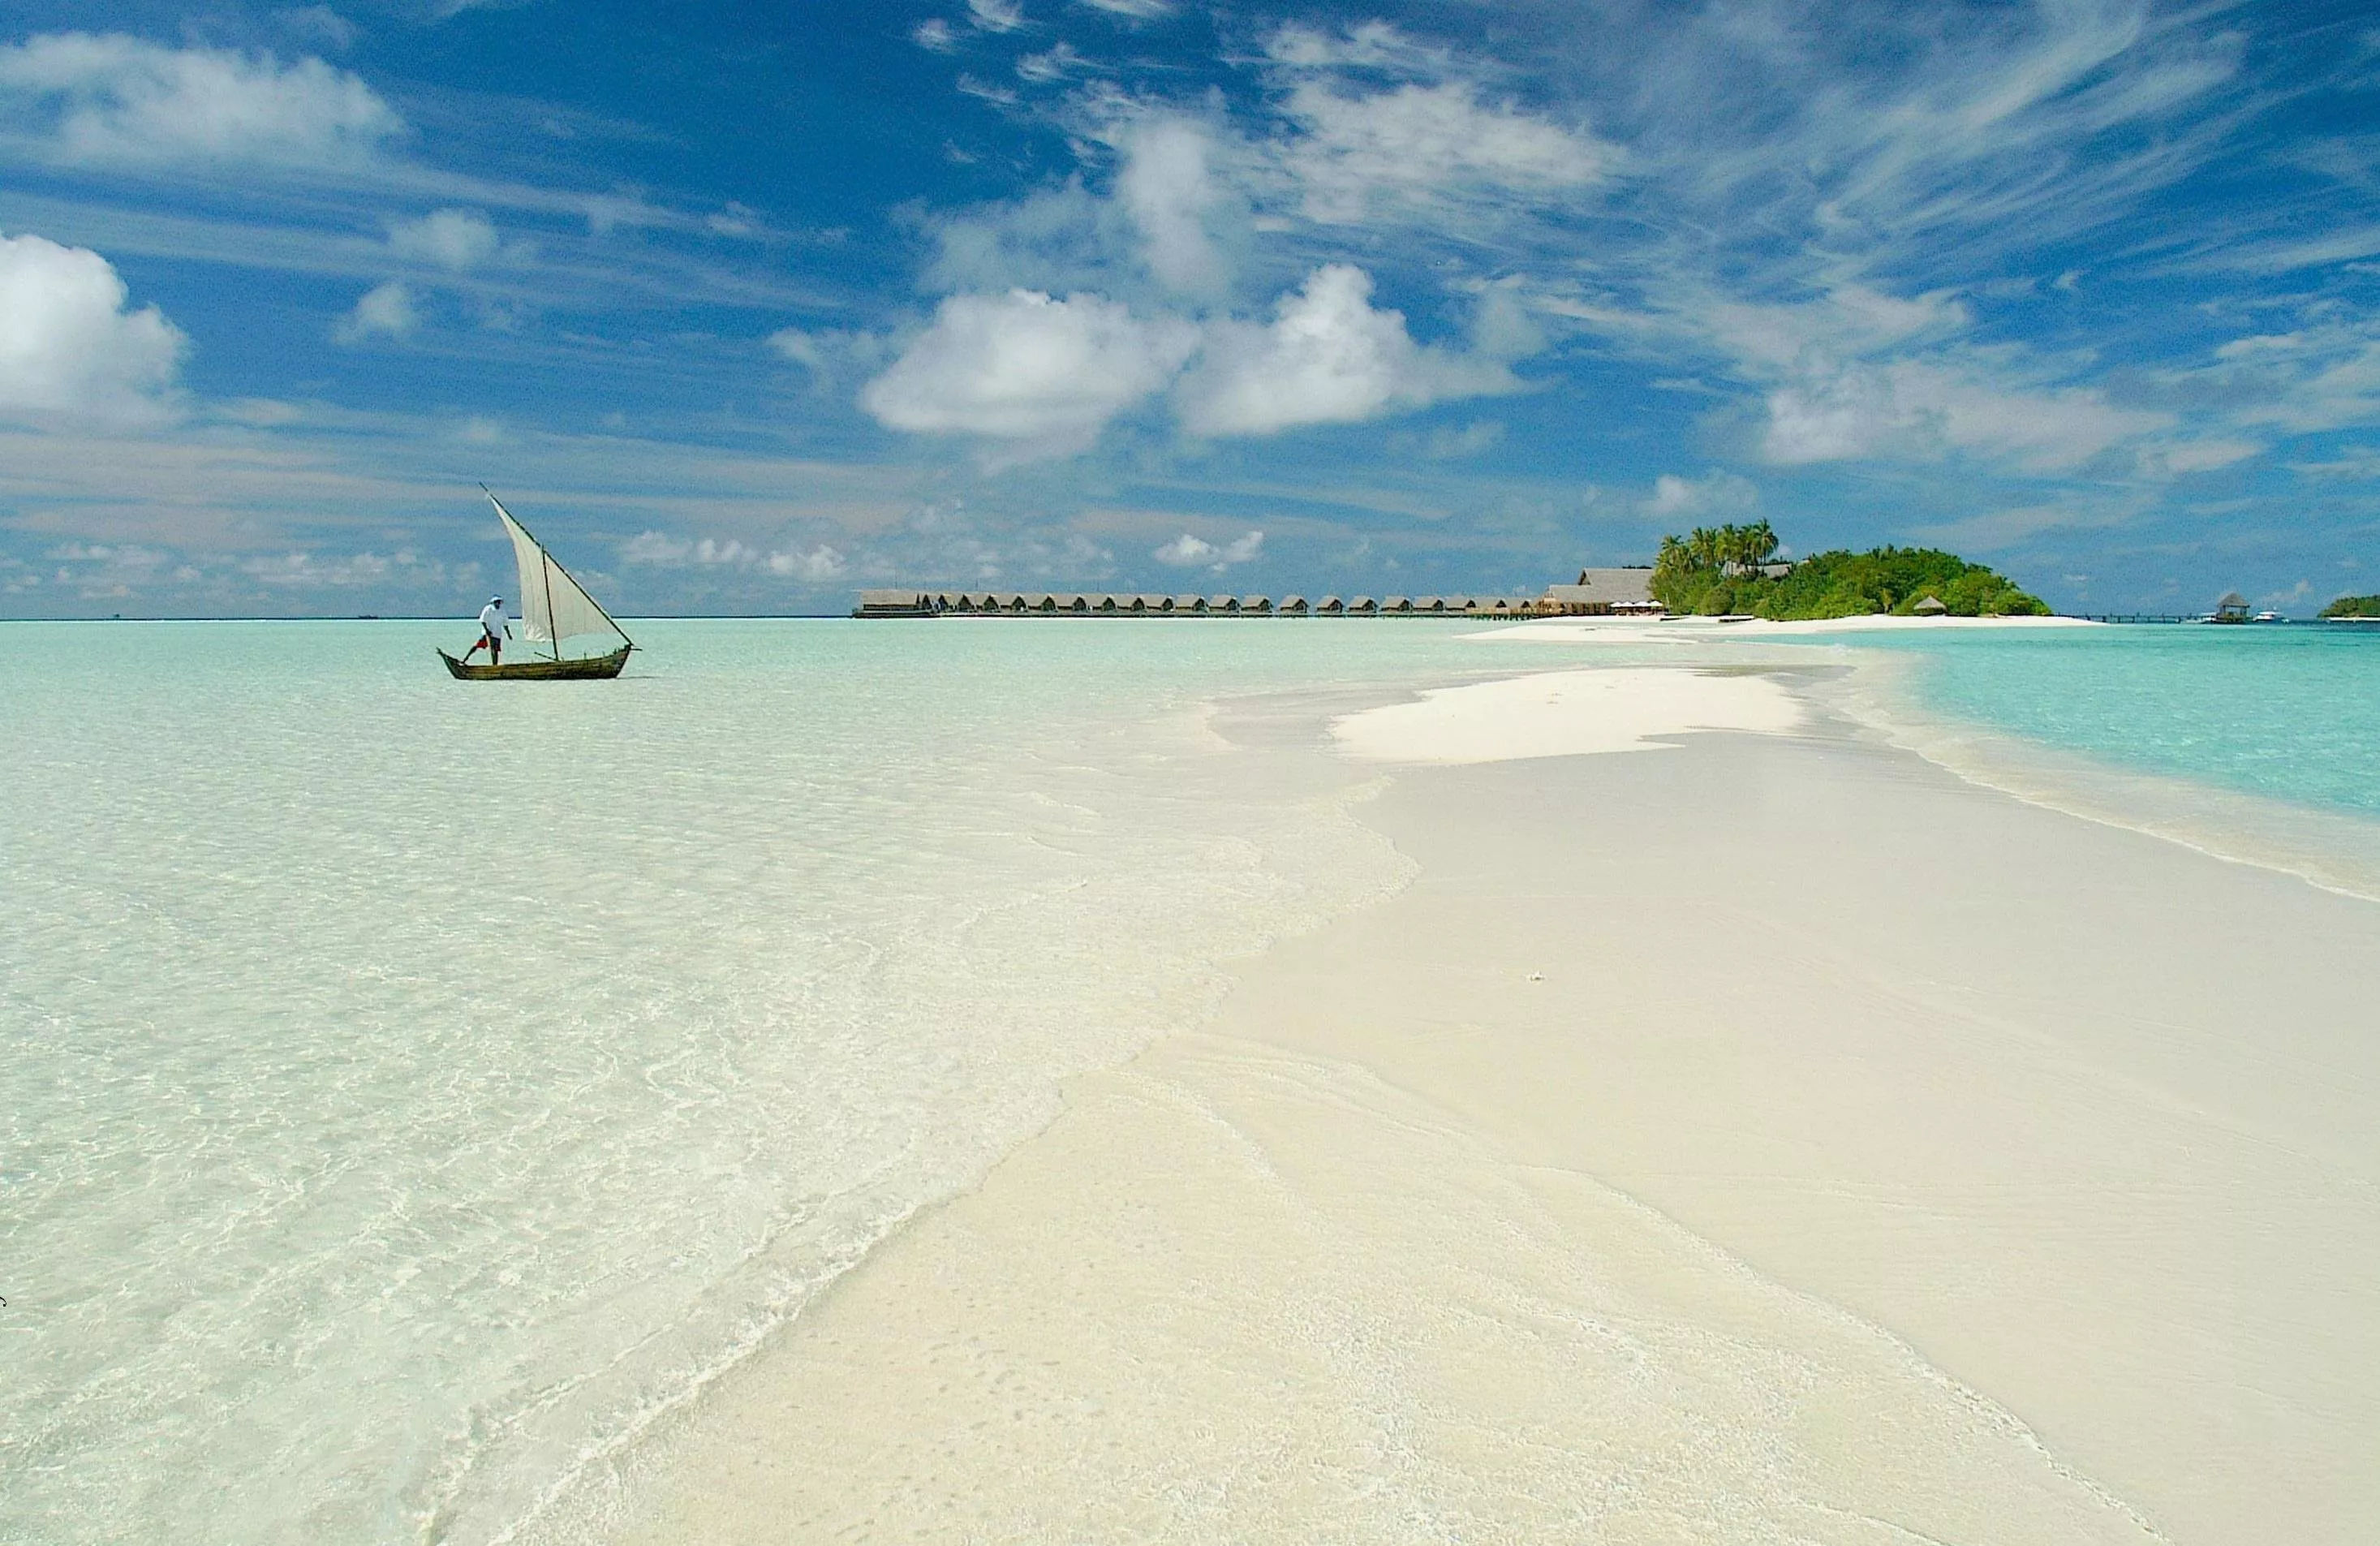 السياحة في جزر المالديف وأهم الوجهات التي لا تفوّت فيها